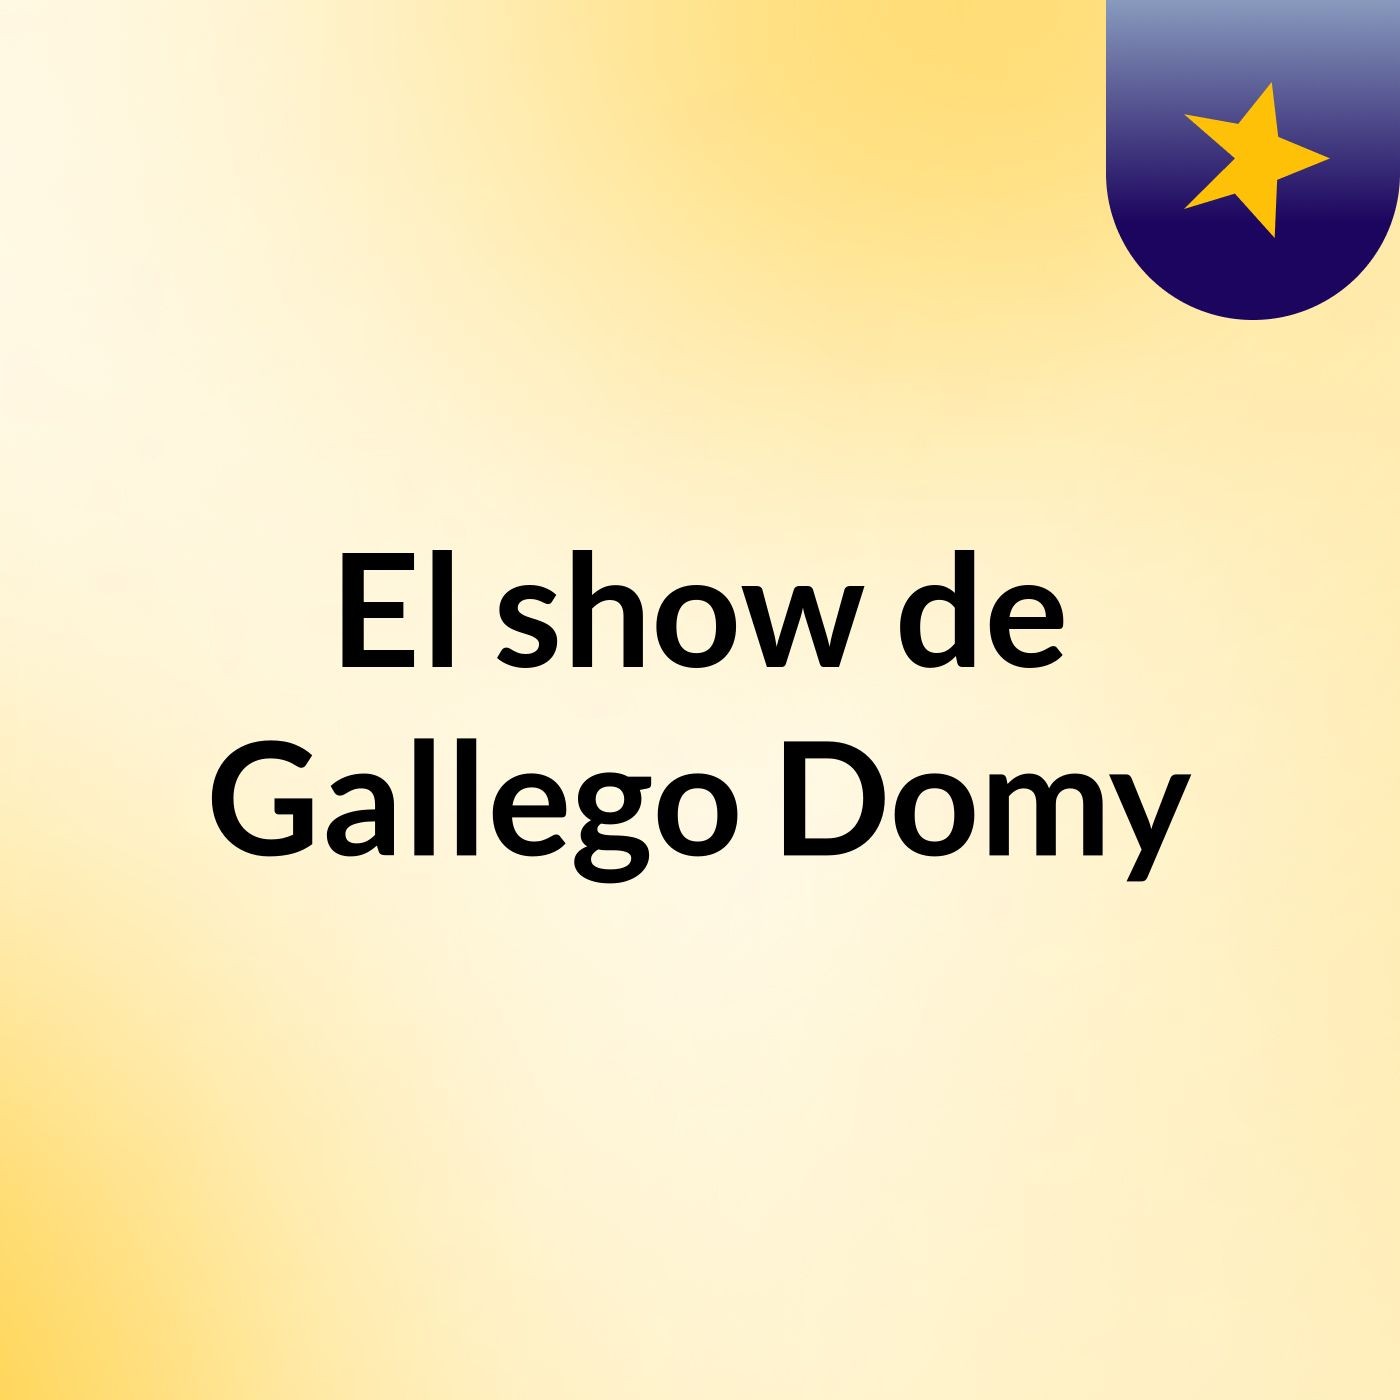 El show de Gallego Domy